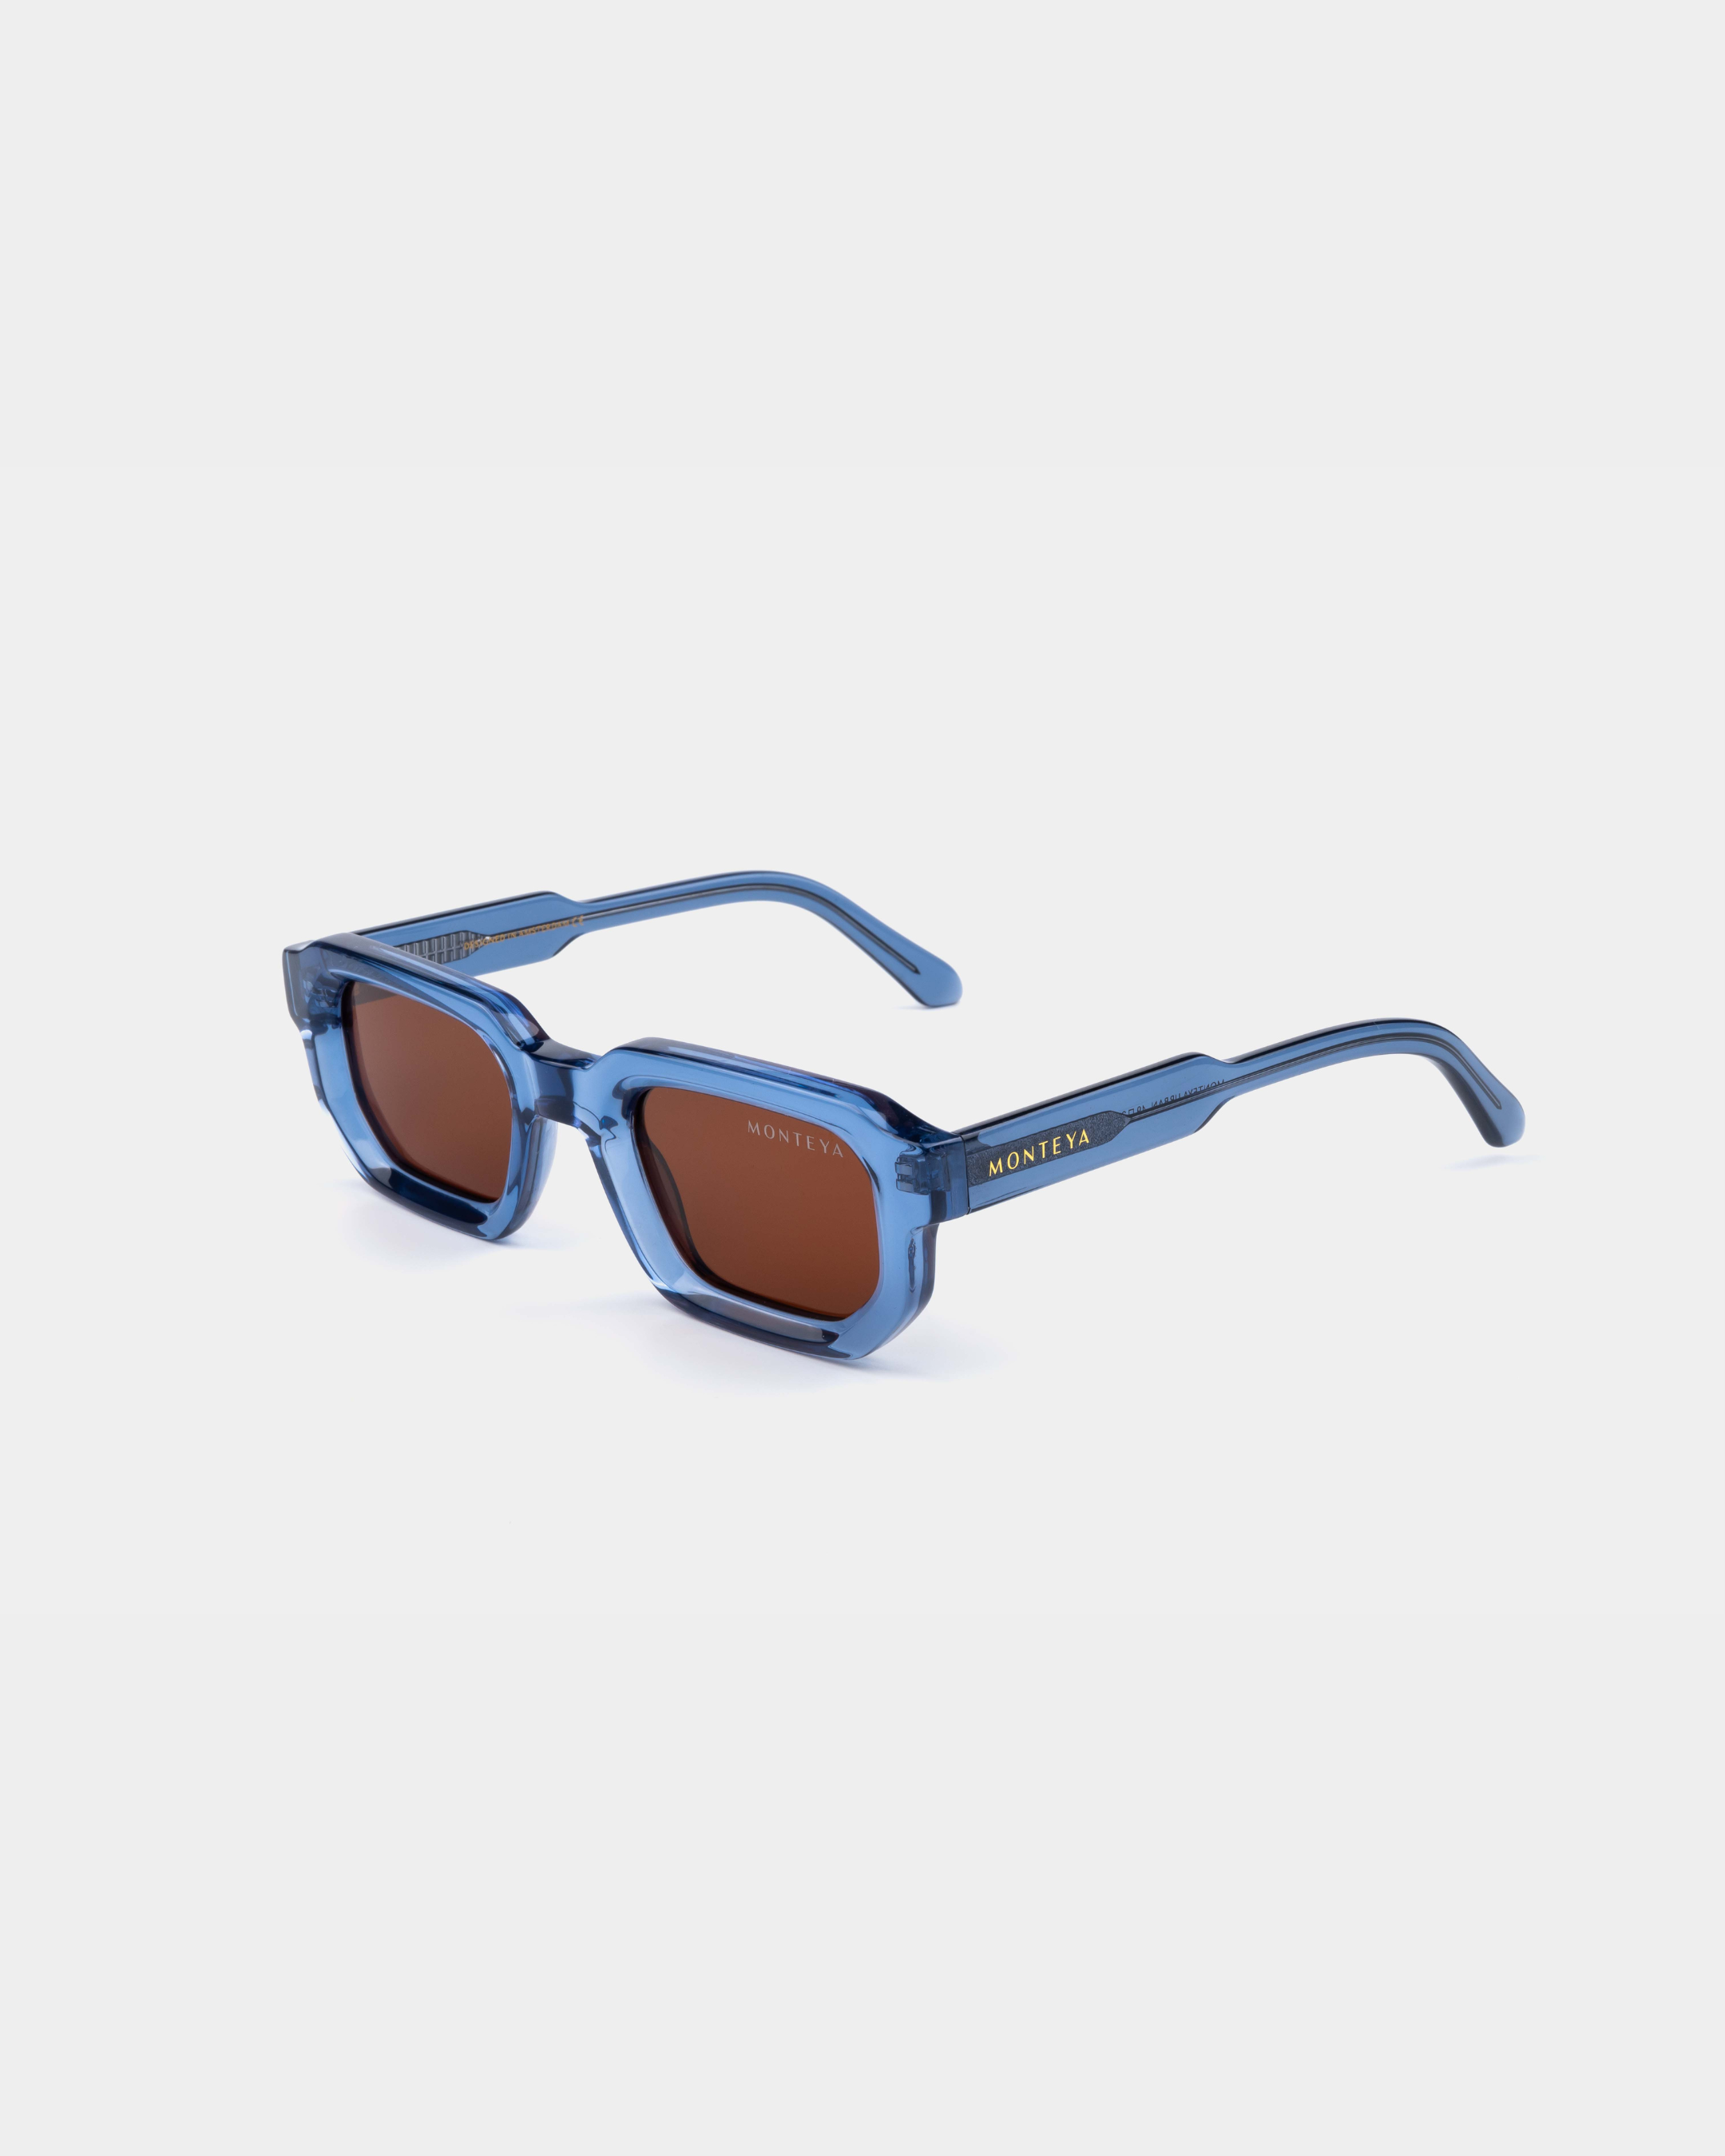 MONTEYA Urban - Lagoon - Acetate Frame - TAC Polarized Lenses - High End Eyewear - 05